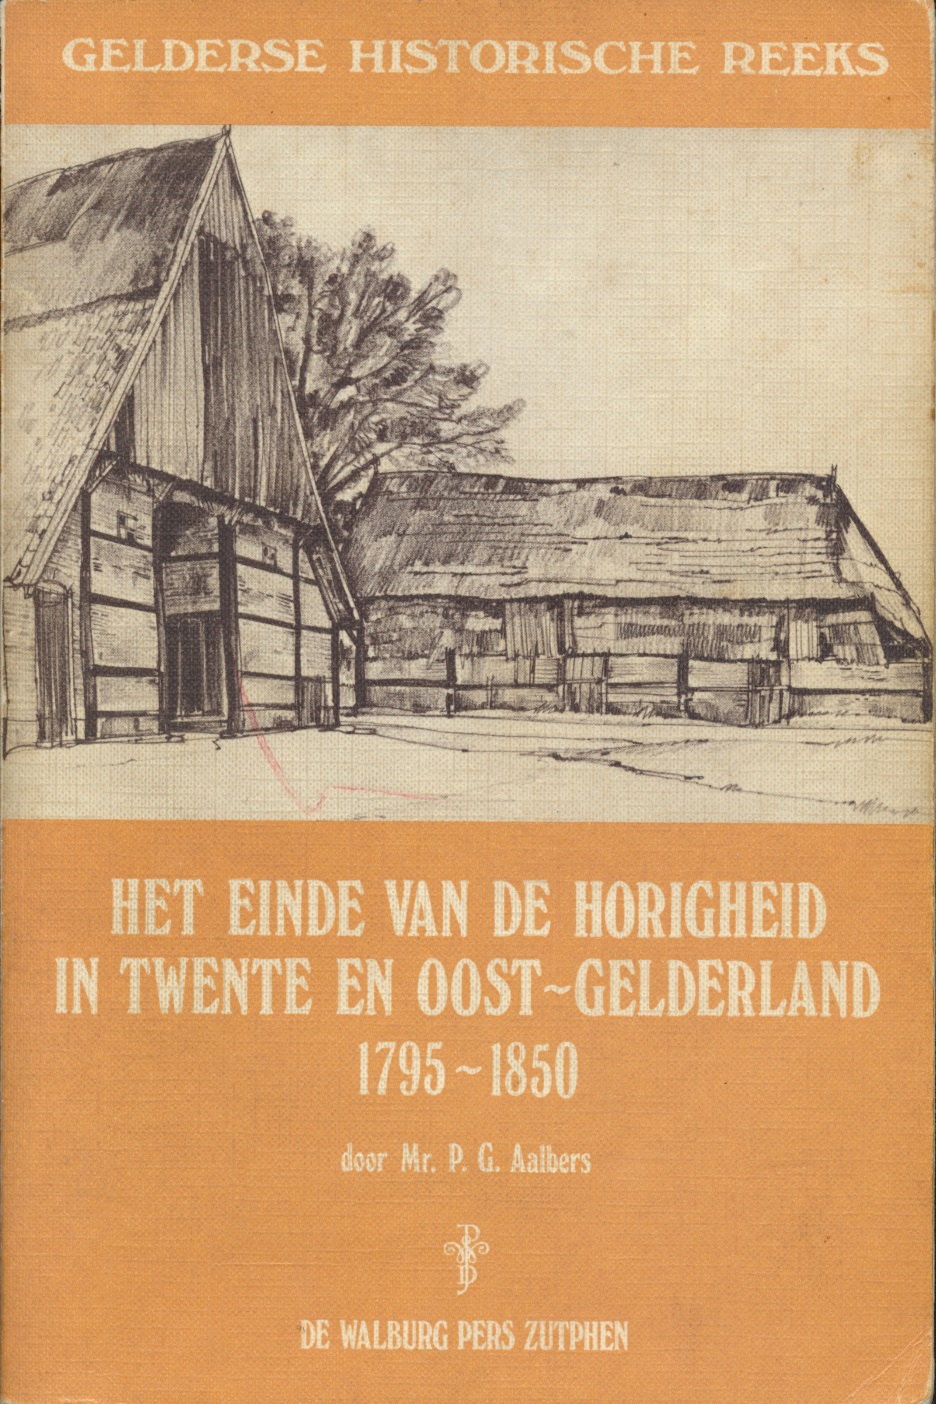 Met dit boek van Paul Aalbers begon in Oost-Gelderland de herontdekking van de horigheid en de strijd die tot diep in de 19de eeuw gevoerd moest worden om de laatste feodale restanten op te ruimen.